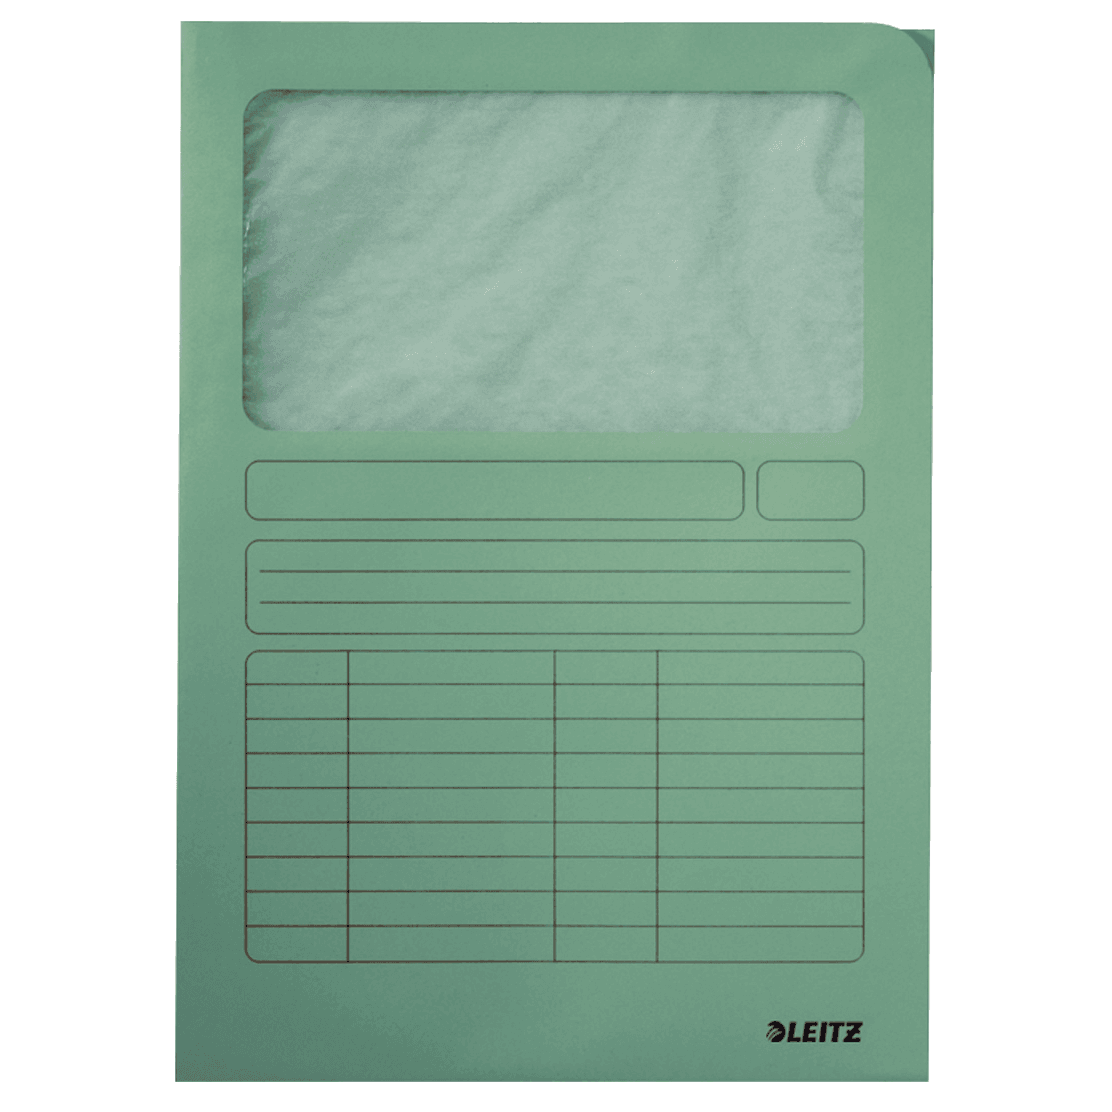 Odkládací desky Leitz s okénkem, světle zelené